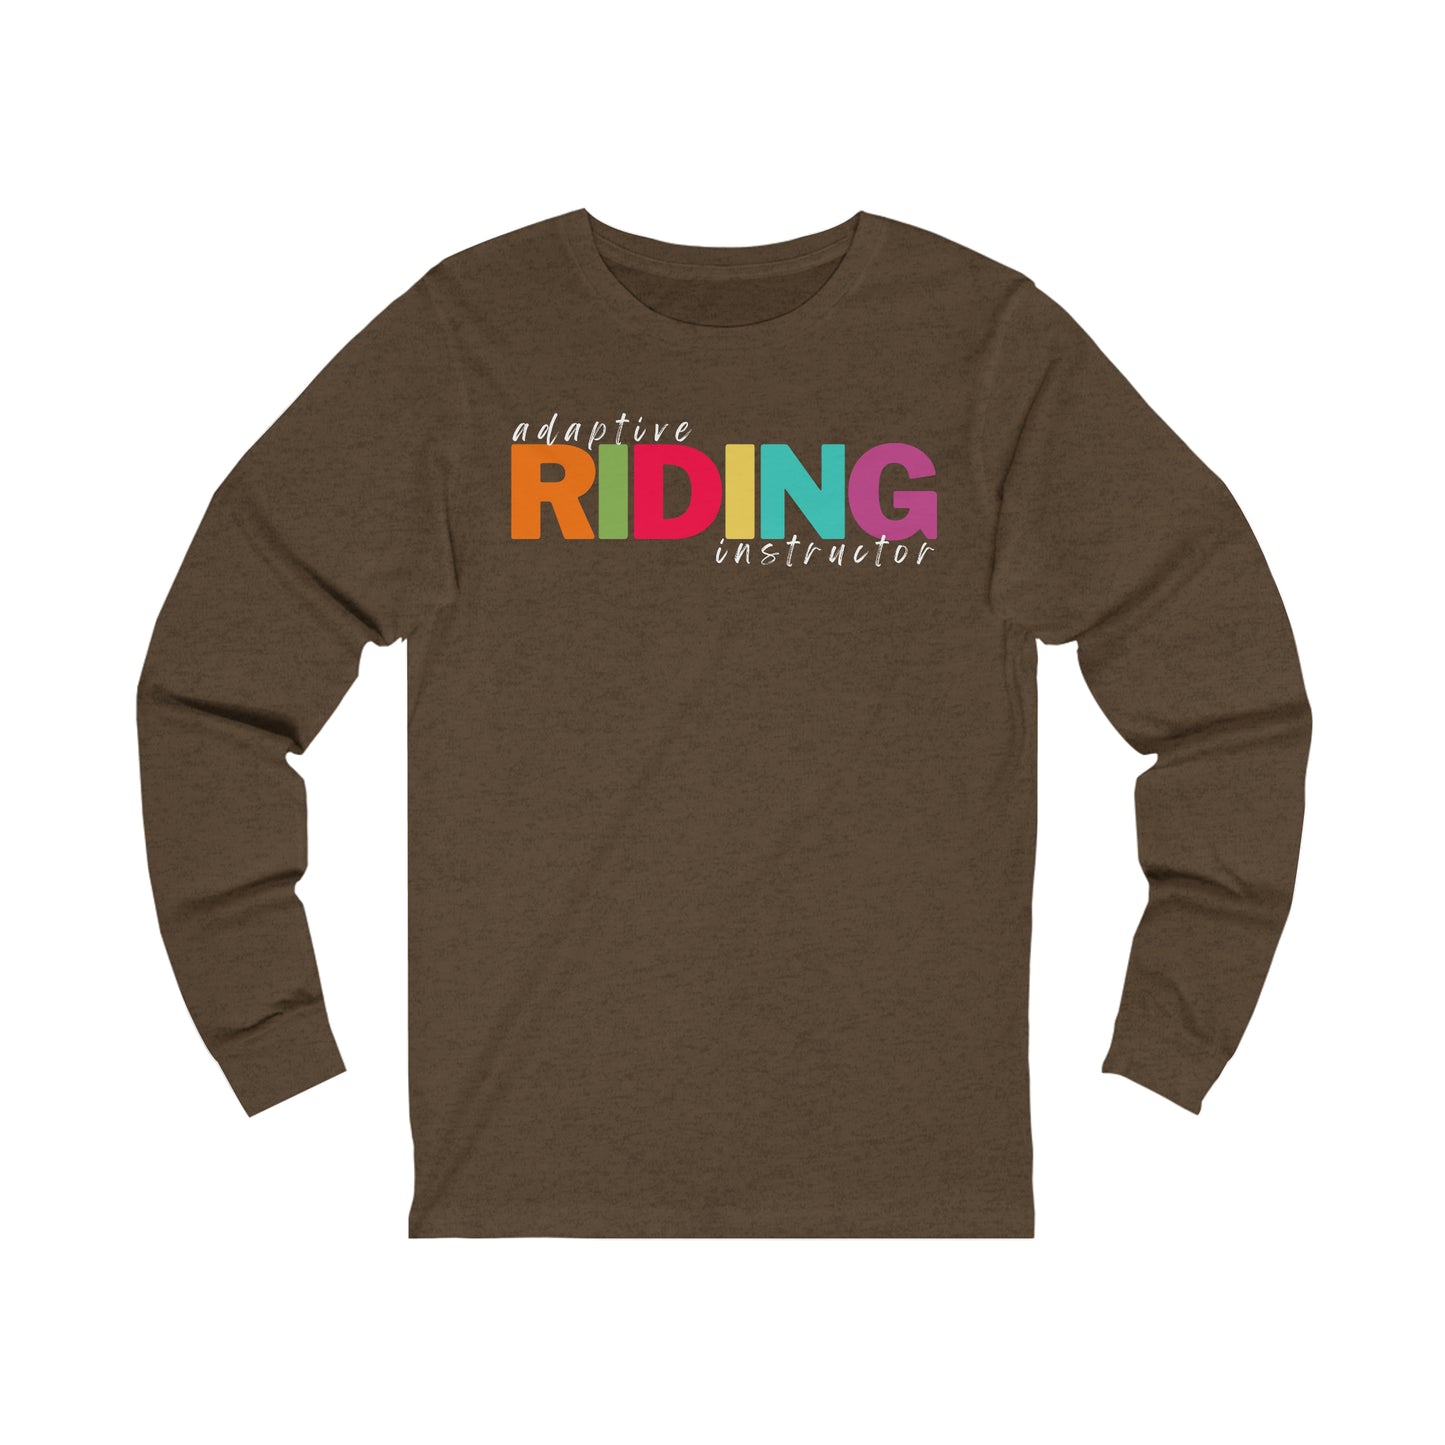 Adaptive Riding Instructor- unisex long sleeve shirt